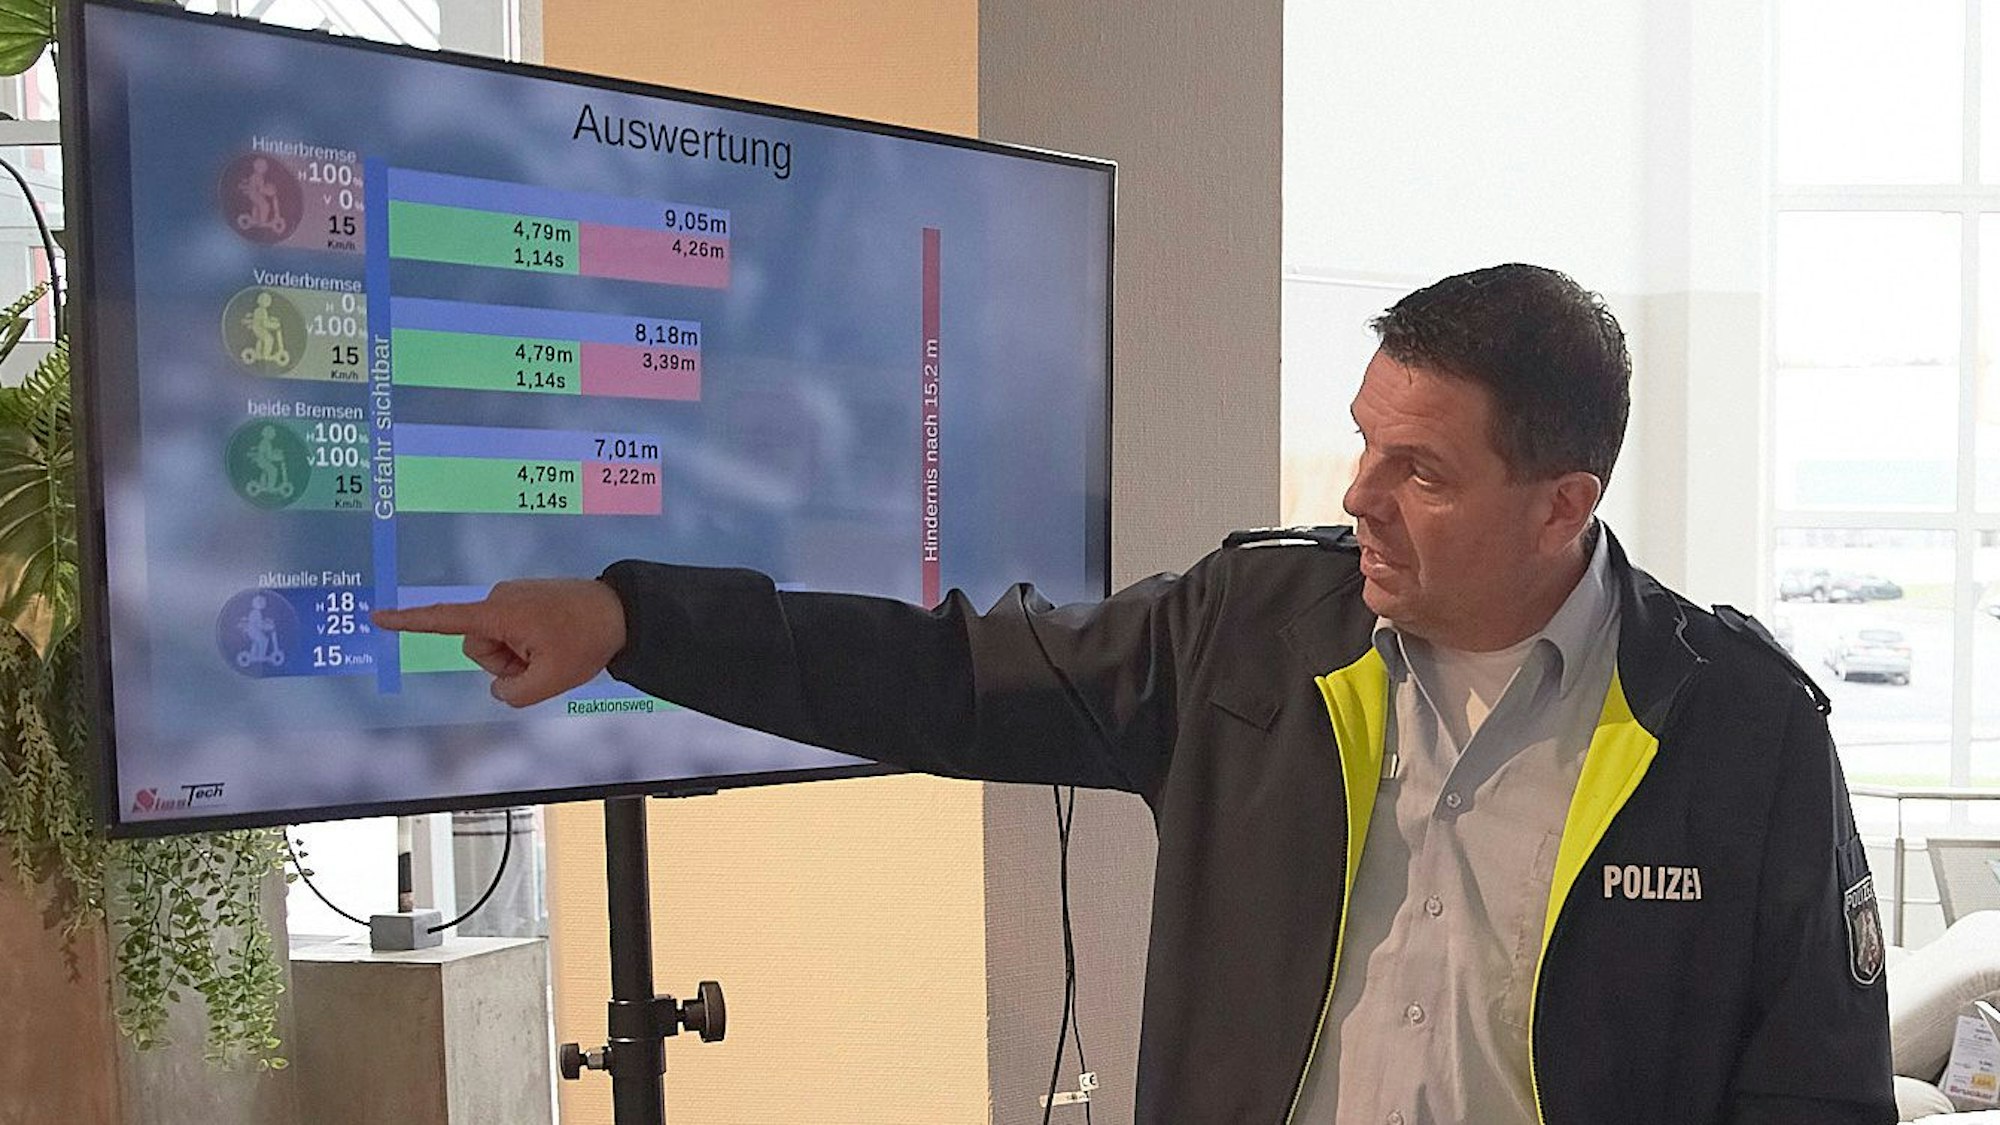 Polizist Jörg Meyer erläutert die Auswertung der Simulatorfahrt an einem Bildschirm.